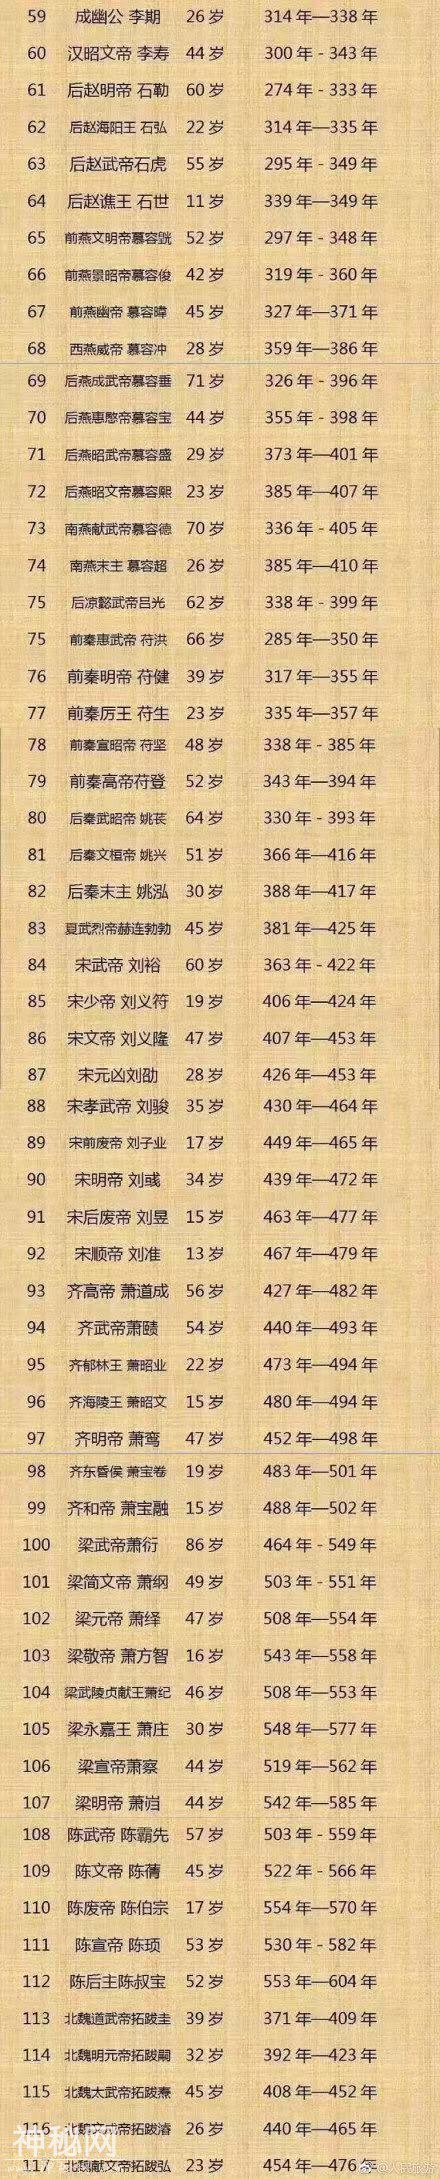 中国古代皇帝的年龄表，乾隆是真的高寿-2.jpg